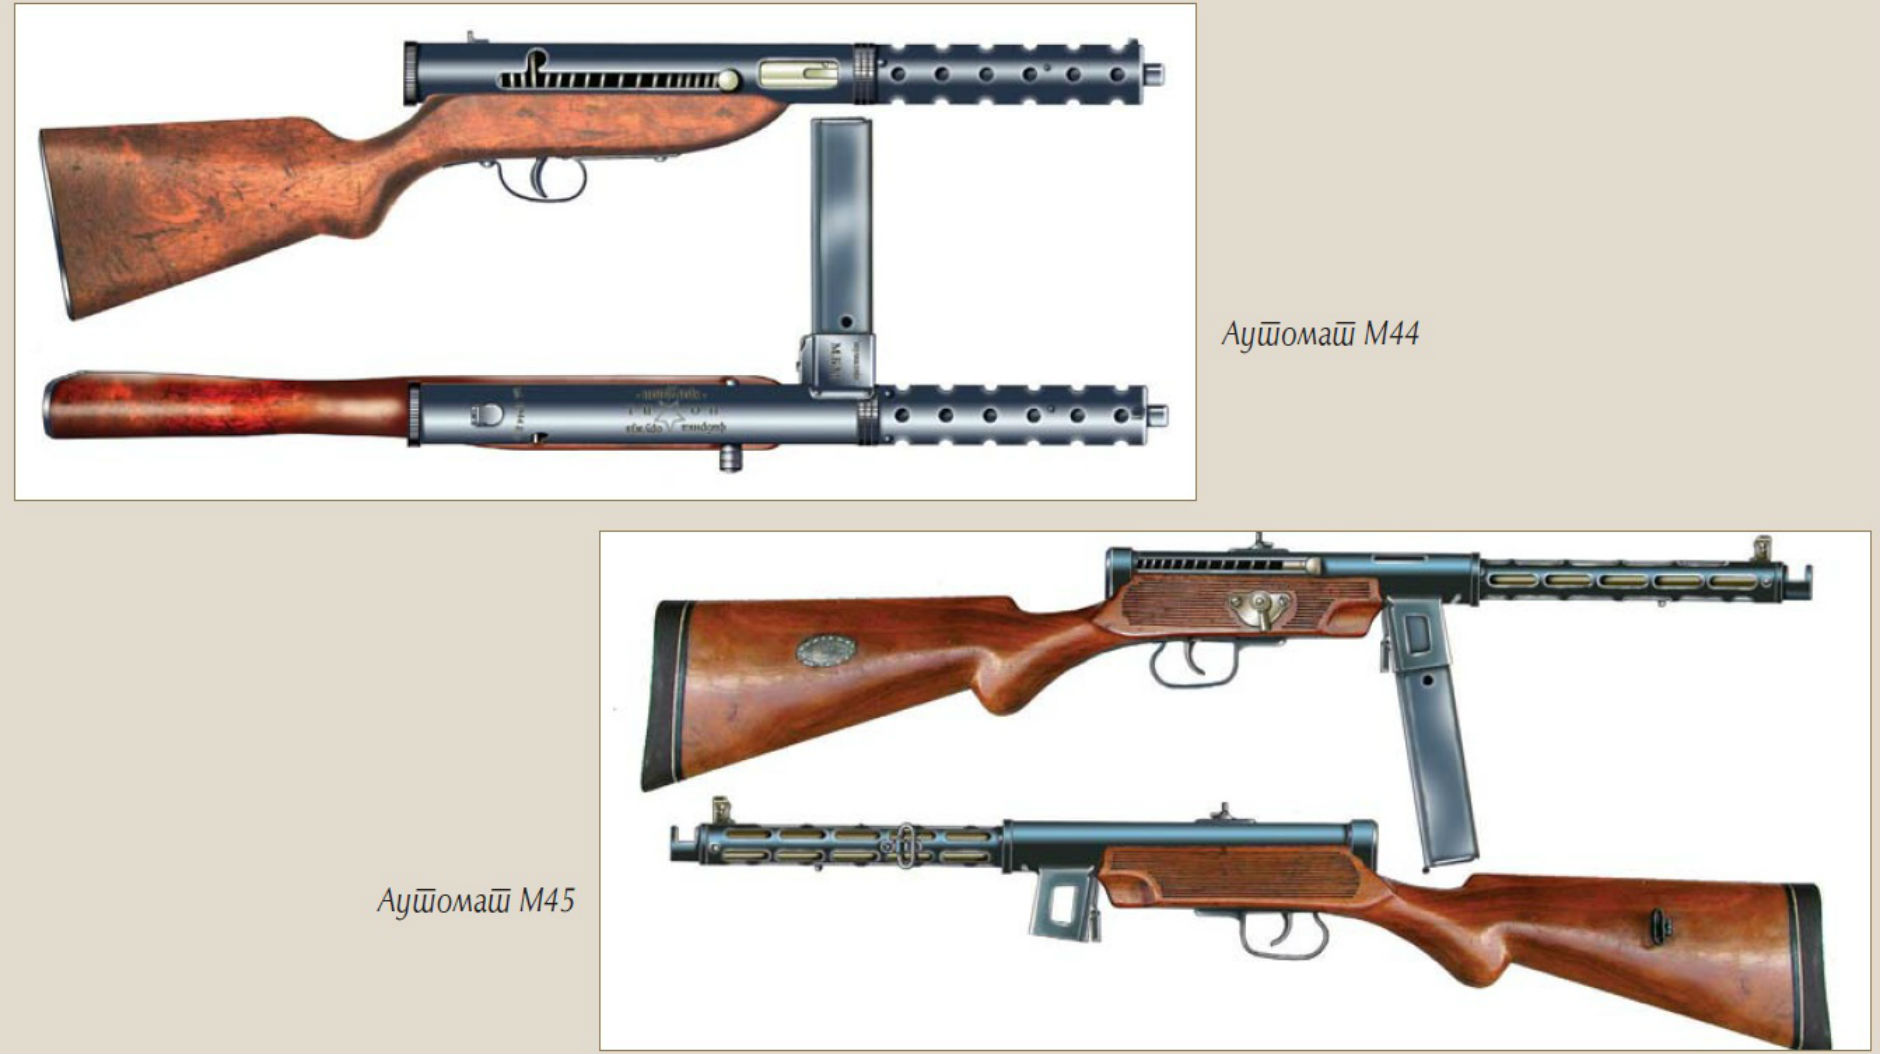 Prvobitne prototipske verzije domaæeg oru¾ja M44 i M45.jpg